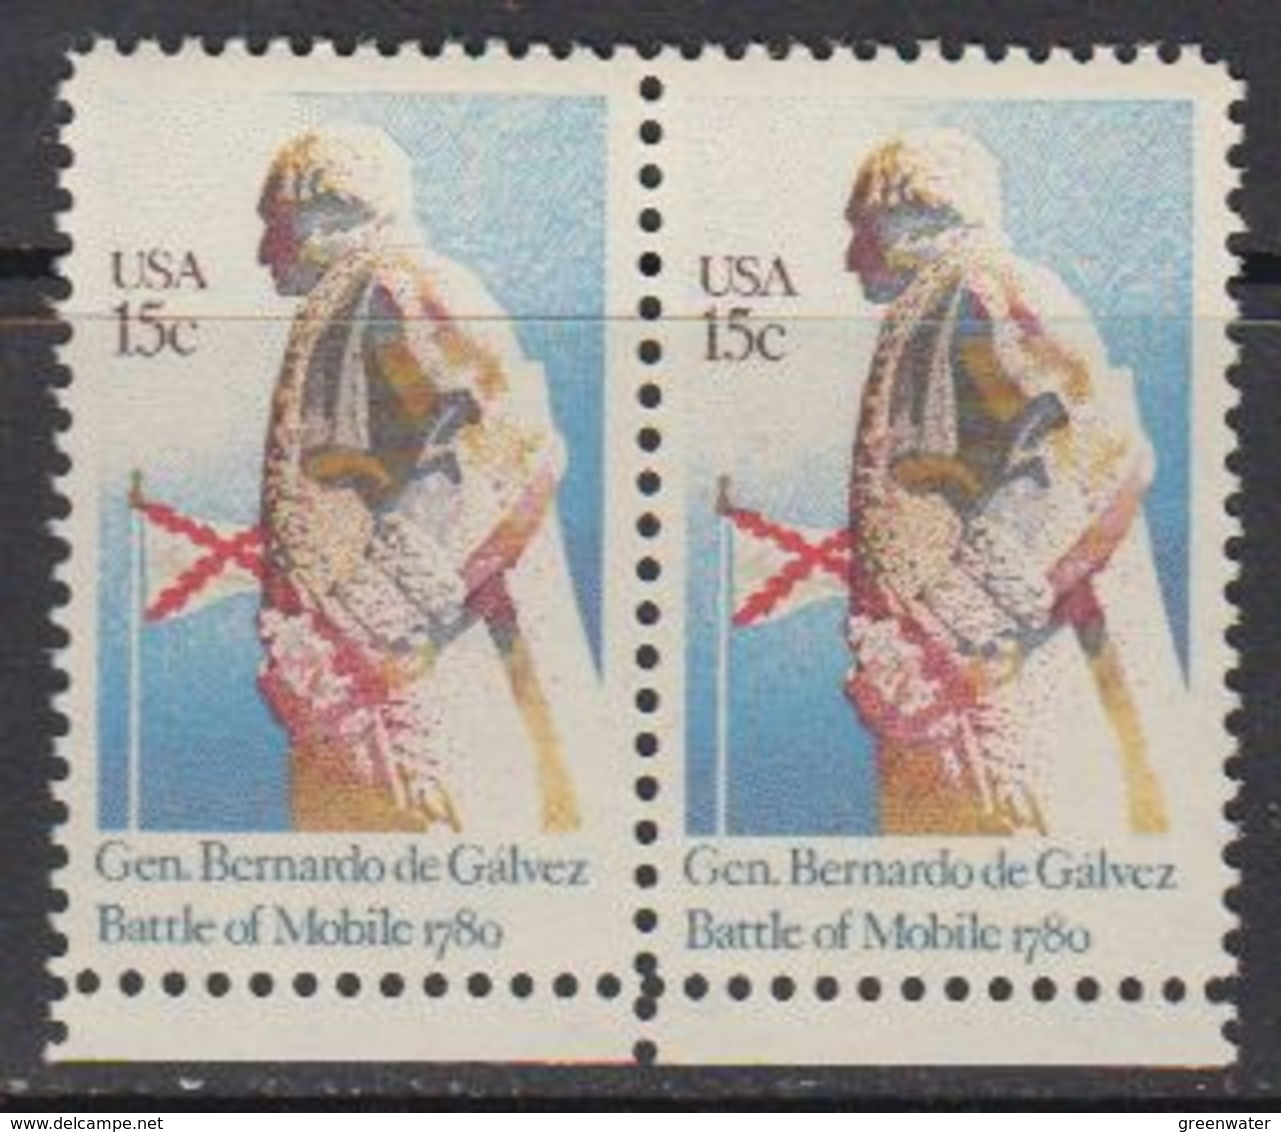 USA 1980 General Bernardo De Galvez / Battle Of Mobile 1v (pair) ** Mnh (41837G) - Nuovi